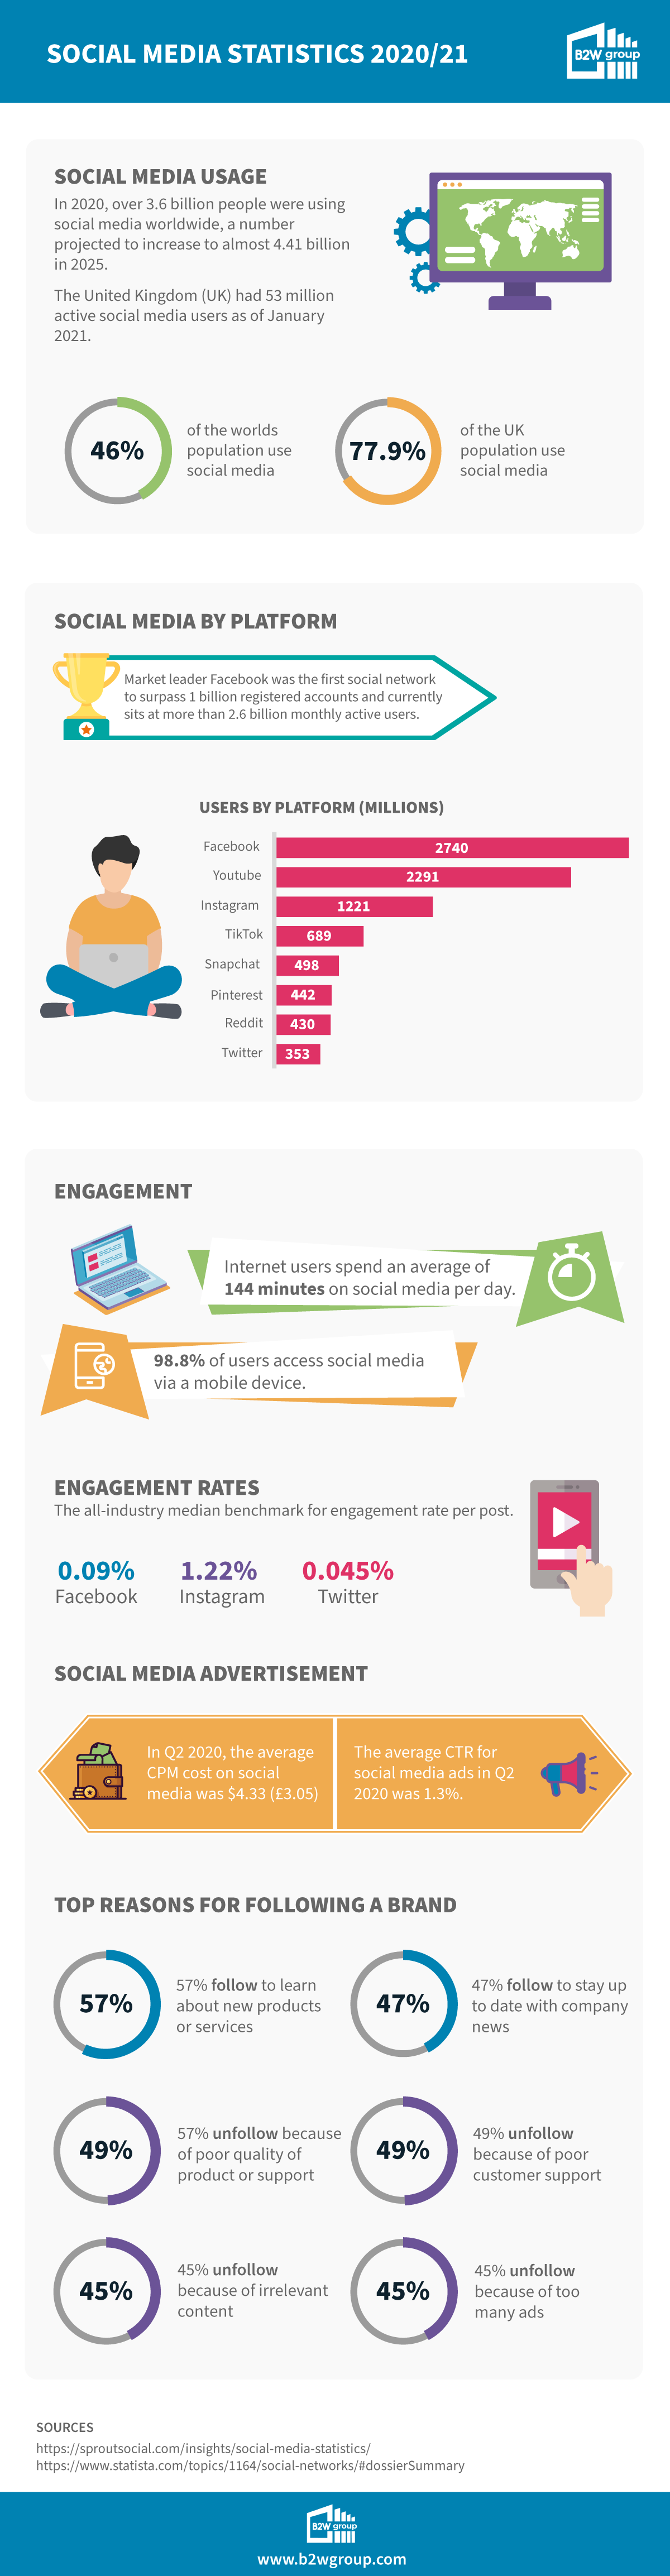 Social media statistics 2021